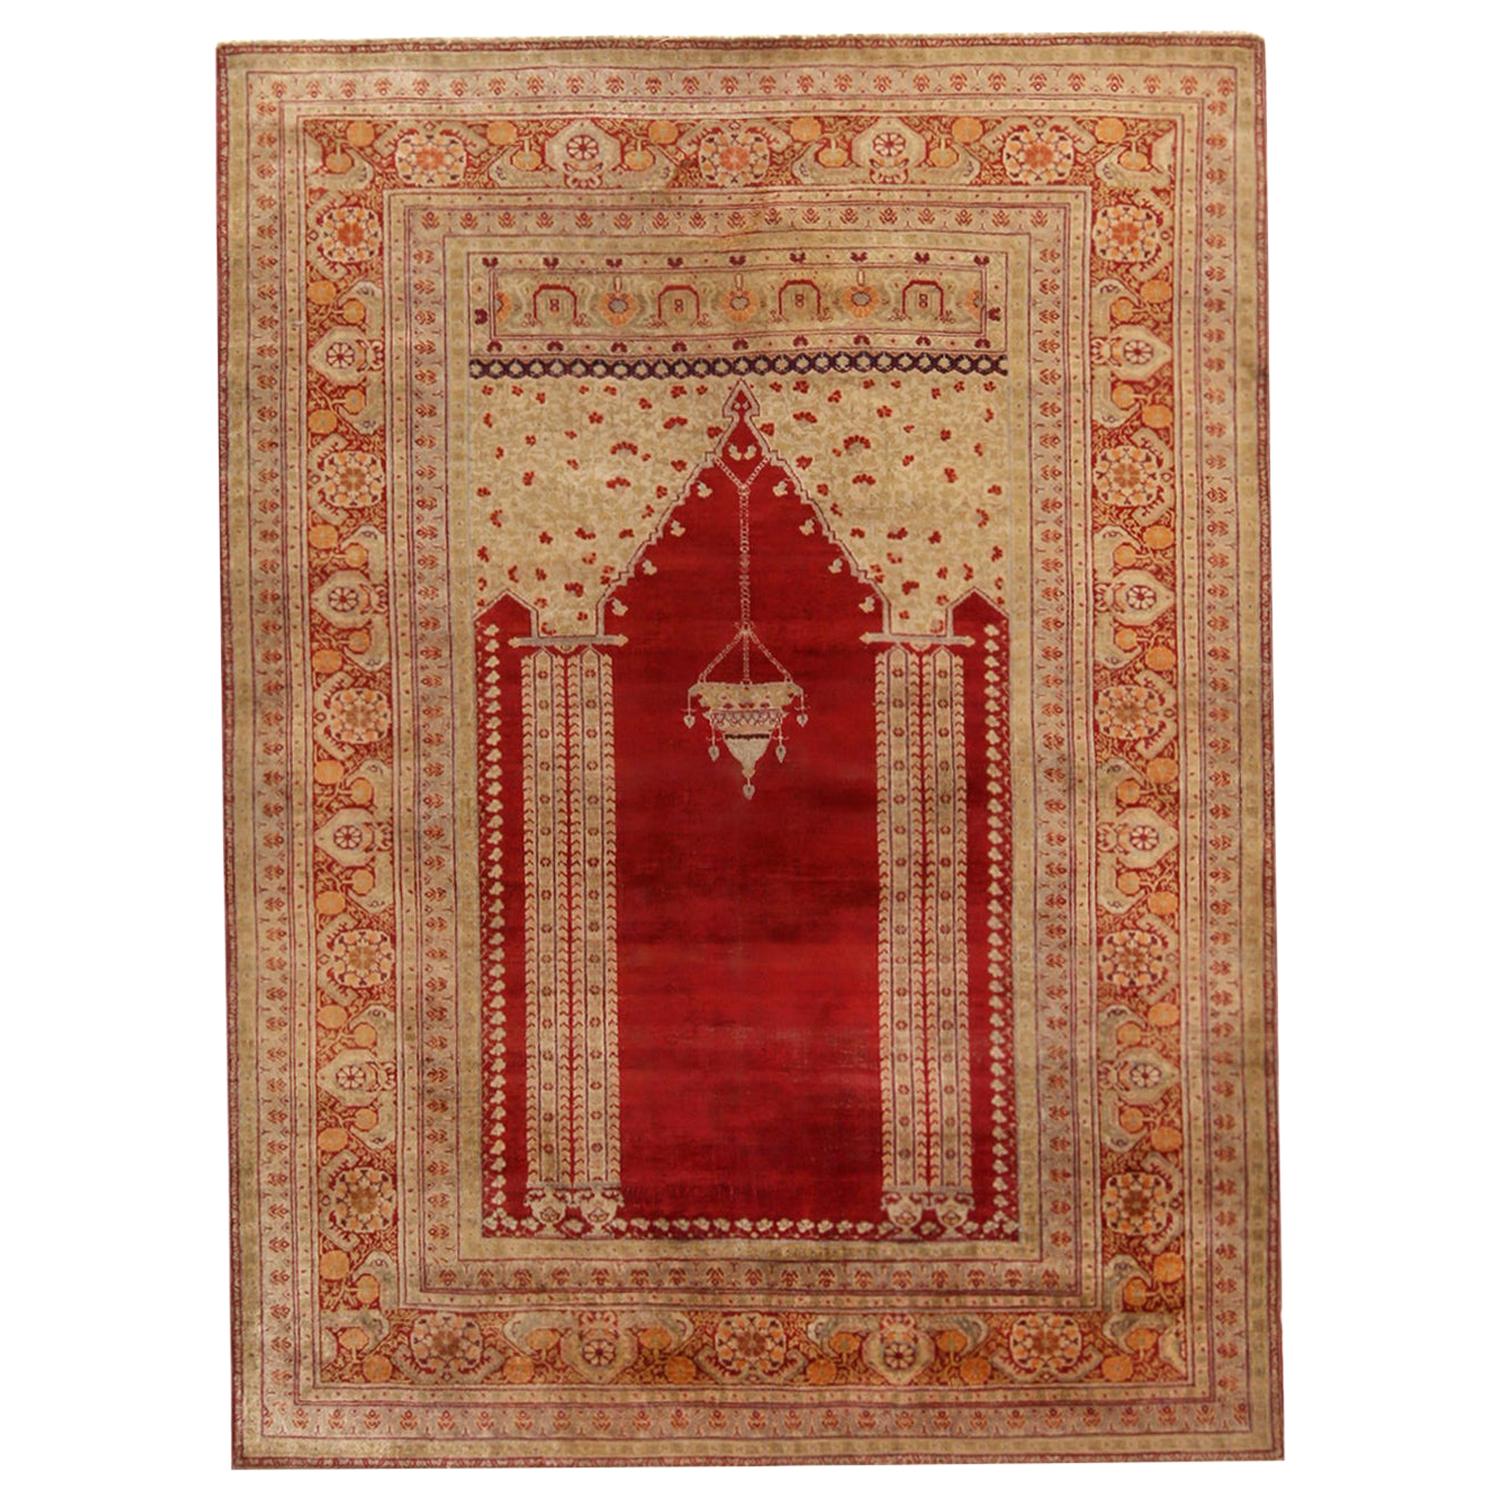 Antique Kayseri Crimson Red and Beige Geometric-Floral Wool Rug by Rug & Kilim